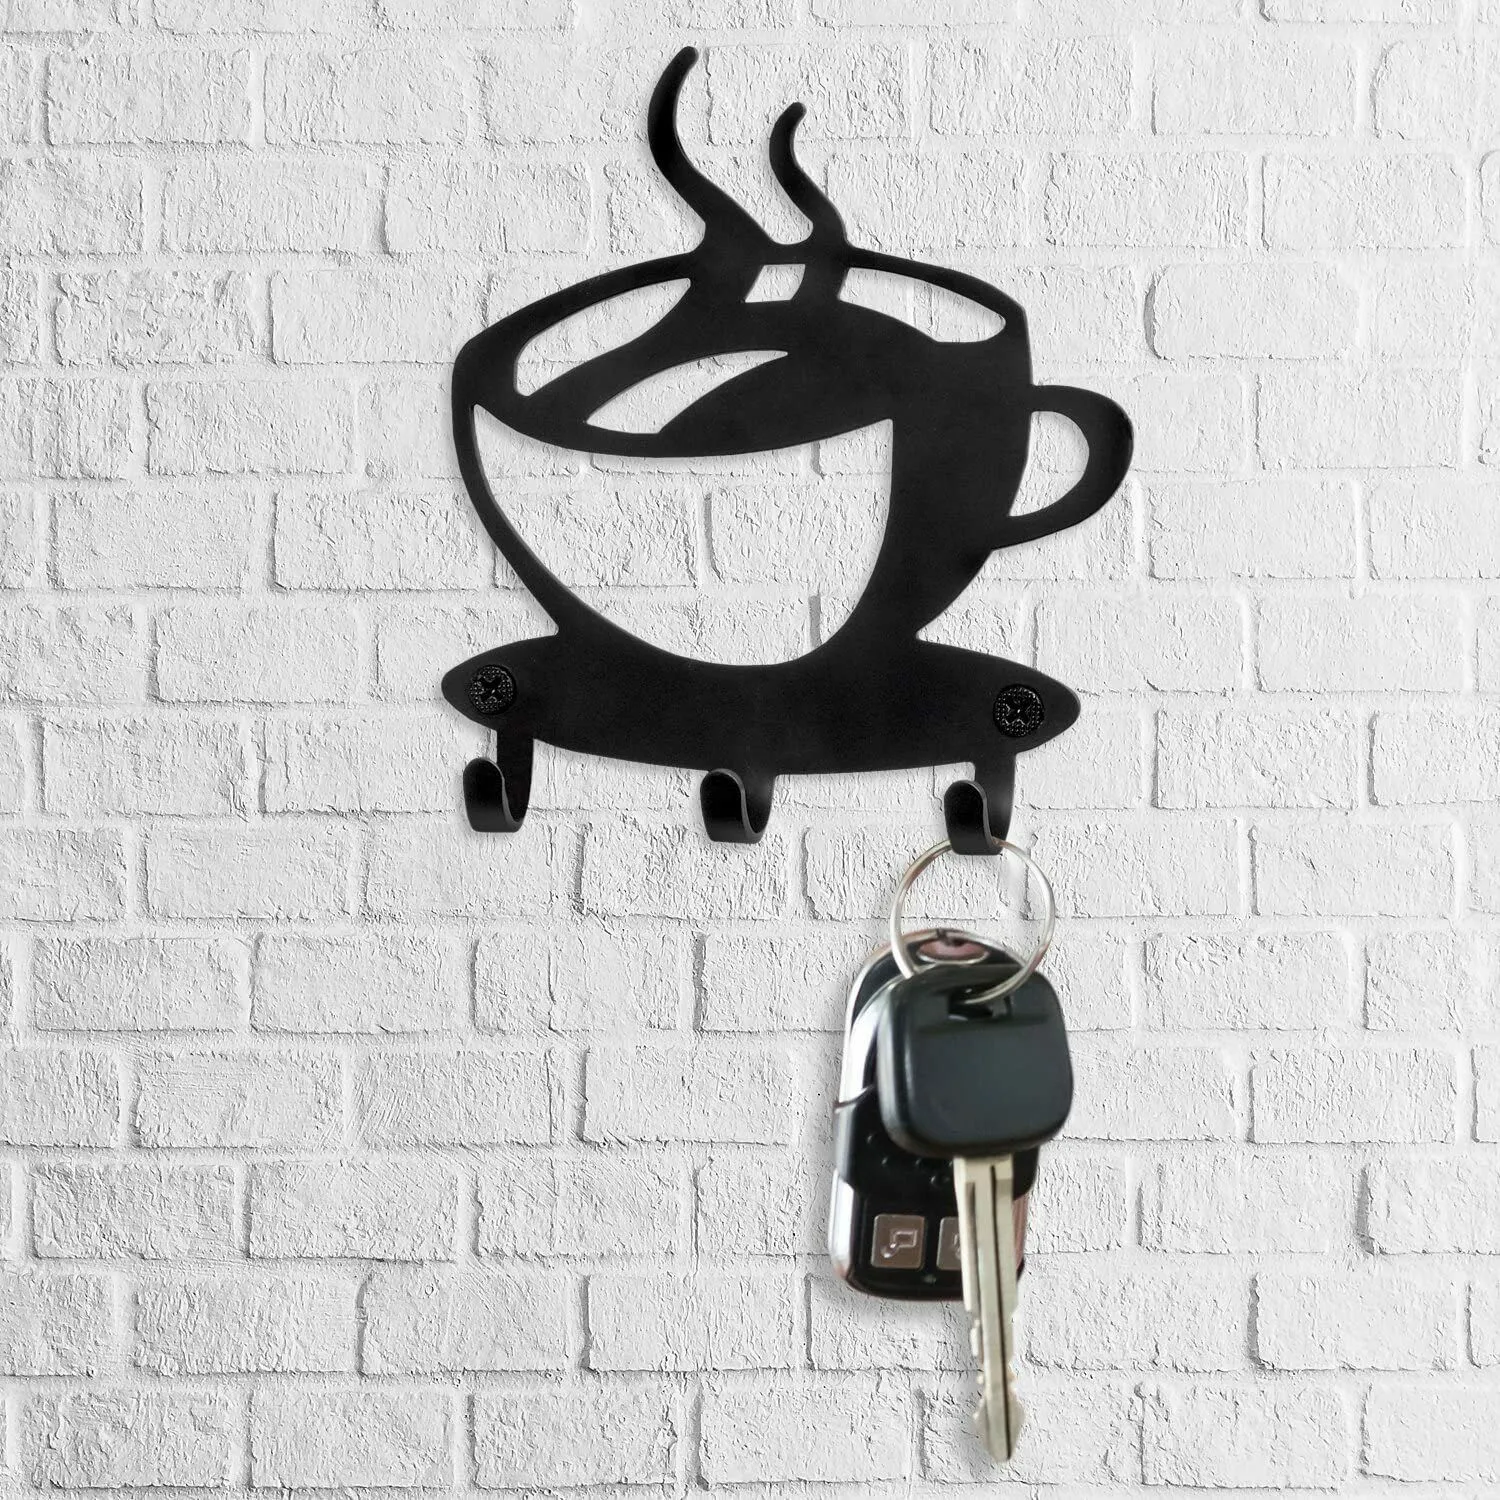 Sleutelhouder Rack Wall Mounted-Modern Coffee Time Decor Key Organizer met 3 haken